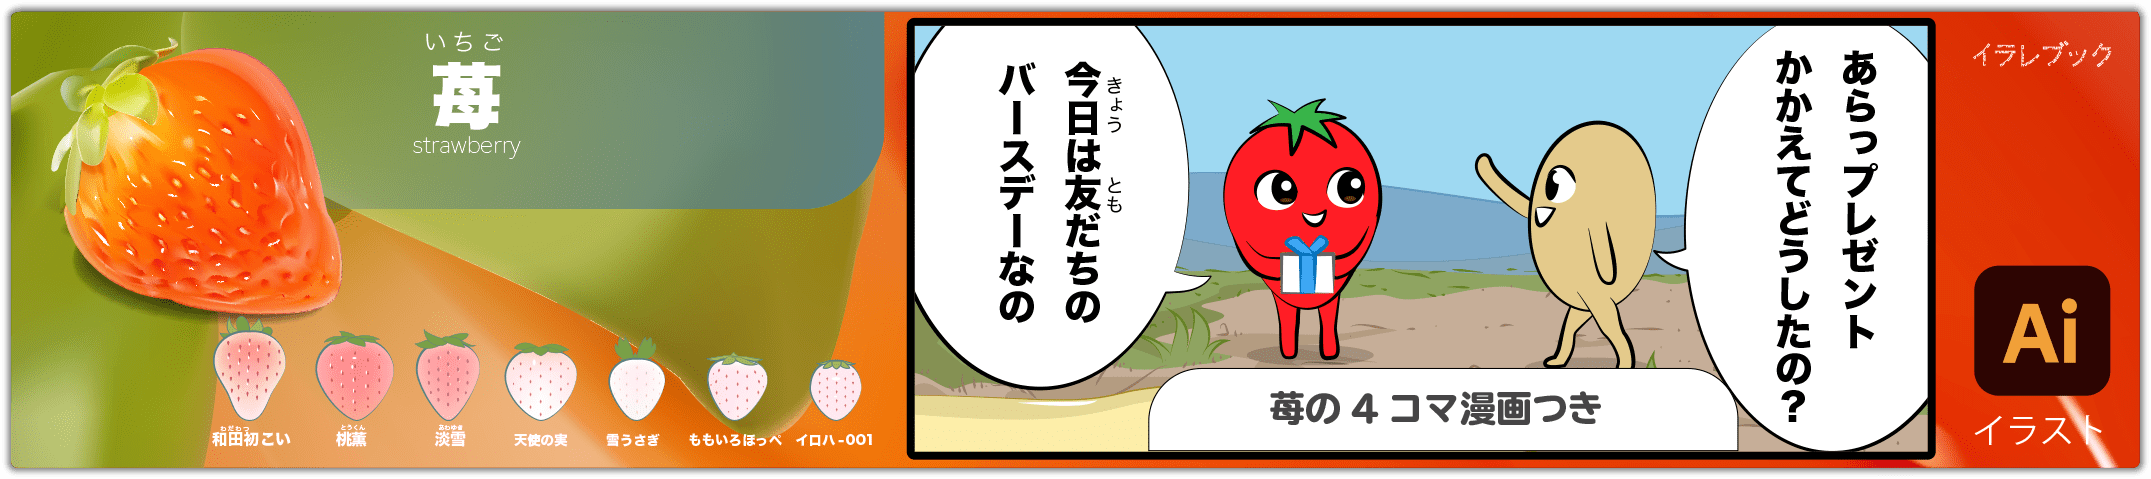 苺 strawberry 4コマ漫画つきのイラスト